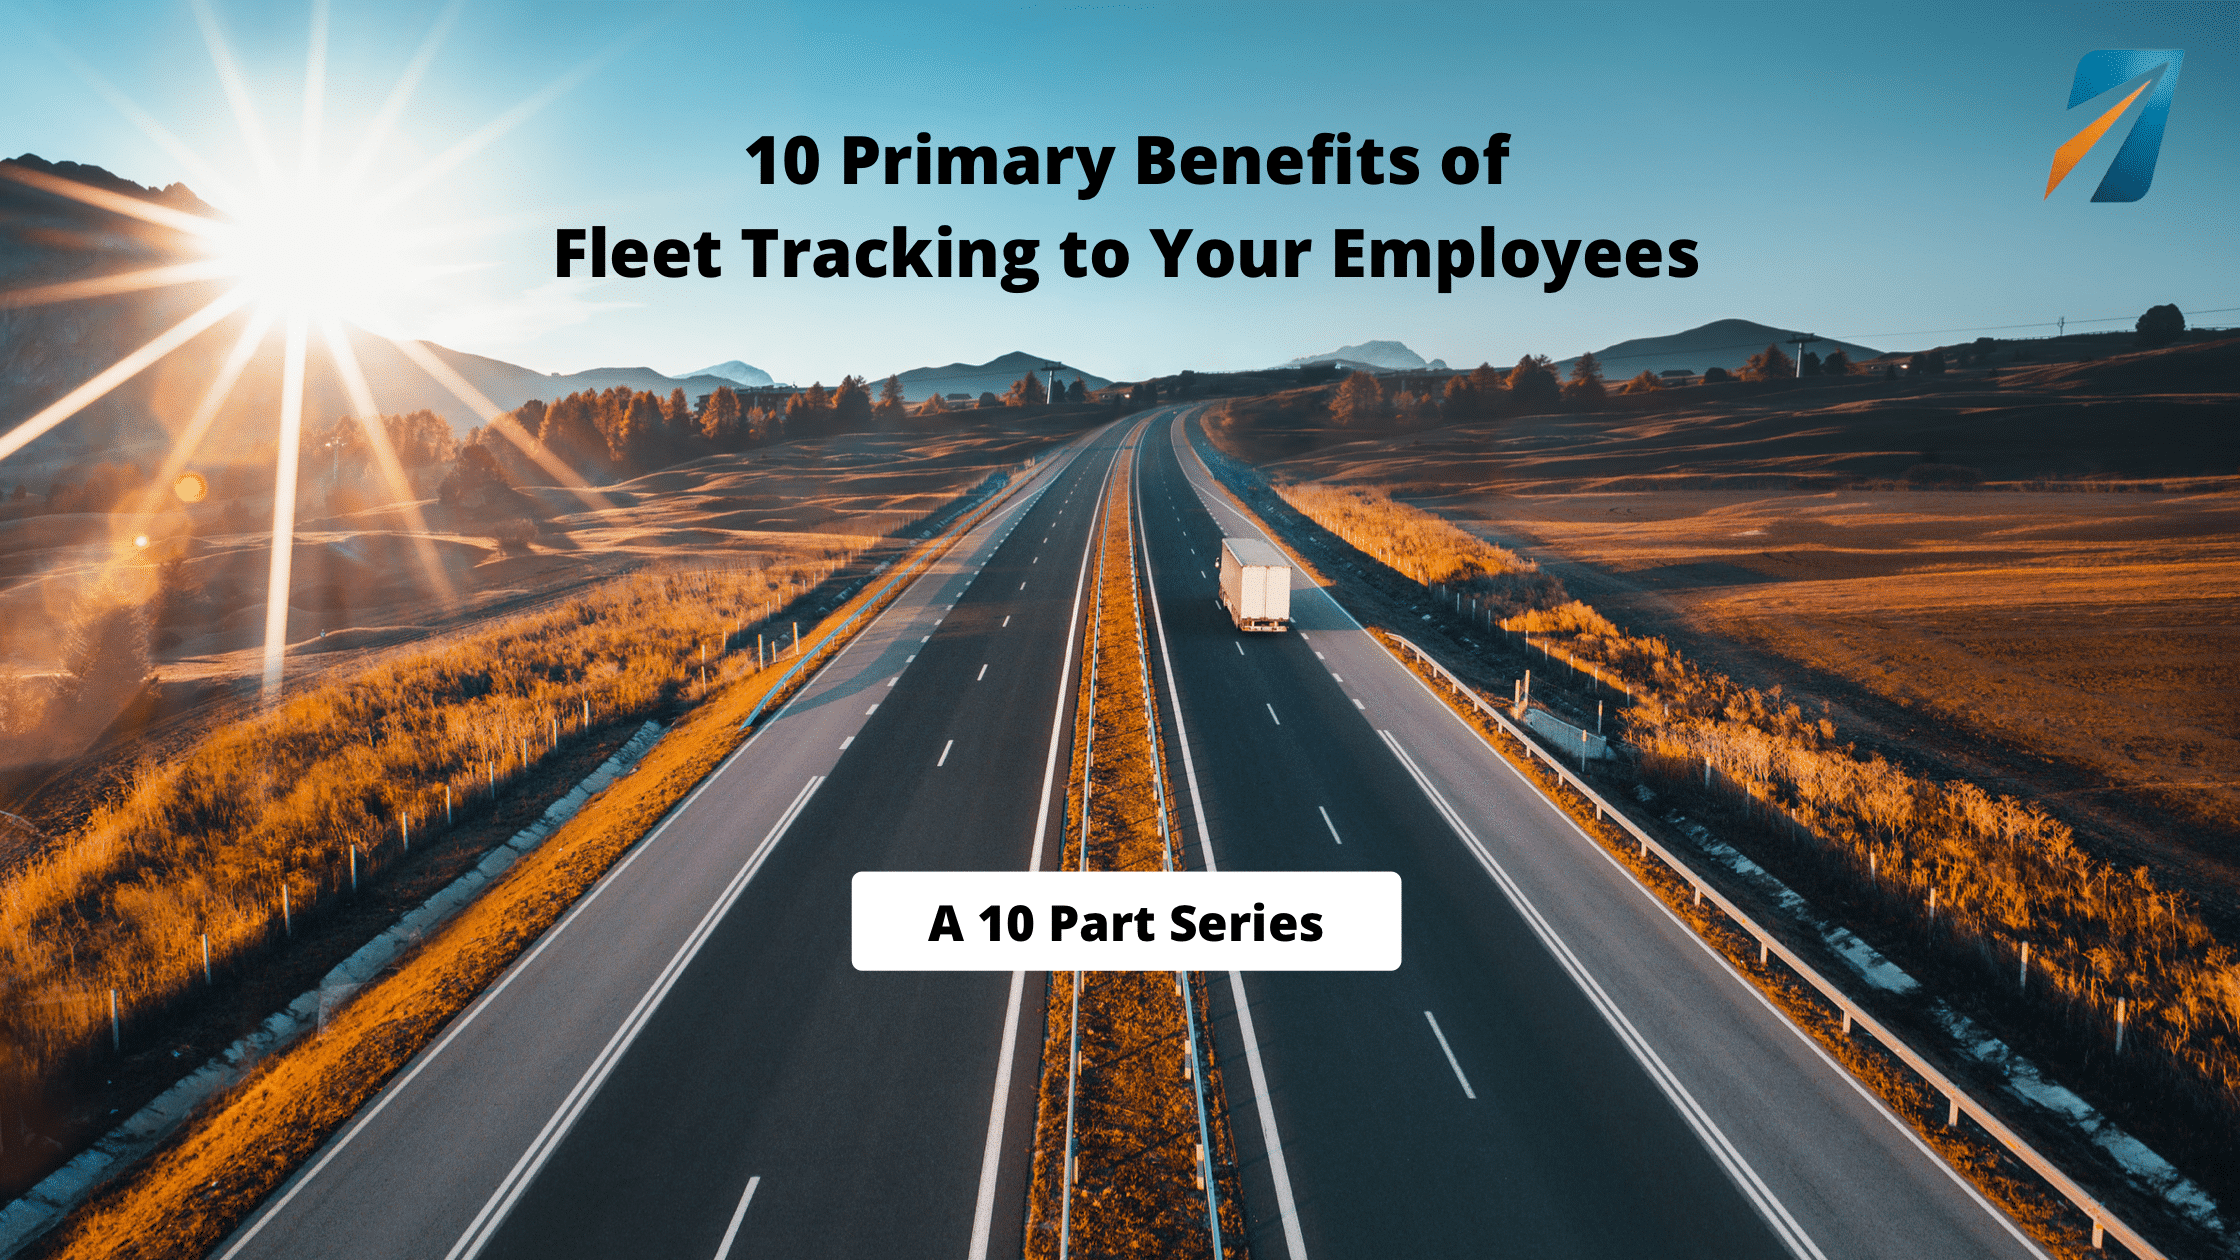 Fleet Tracking Employee Benefit 01